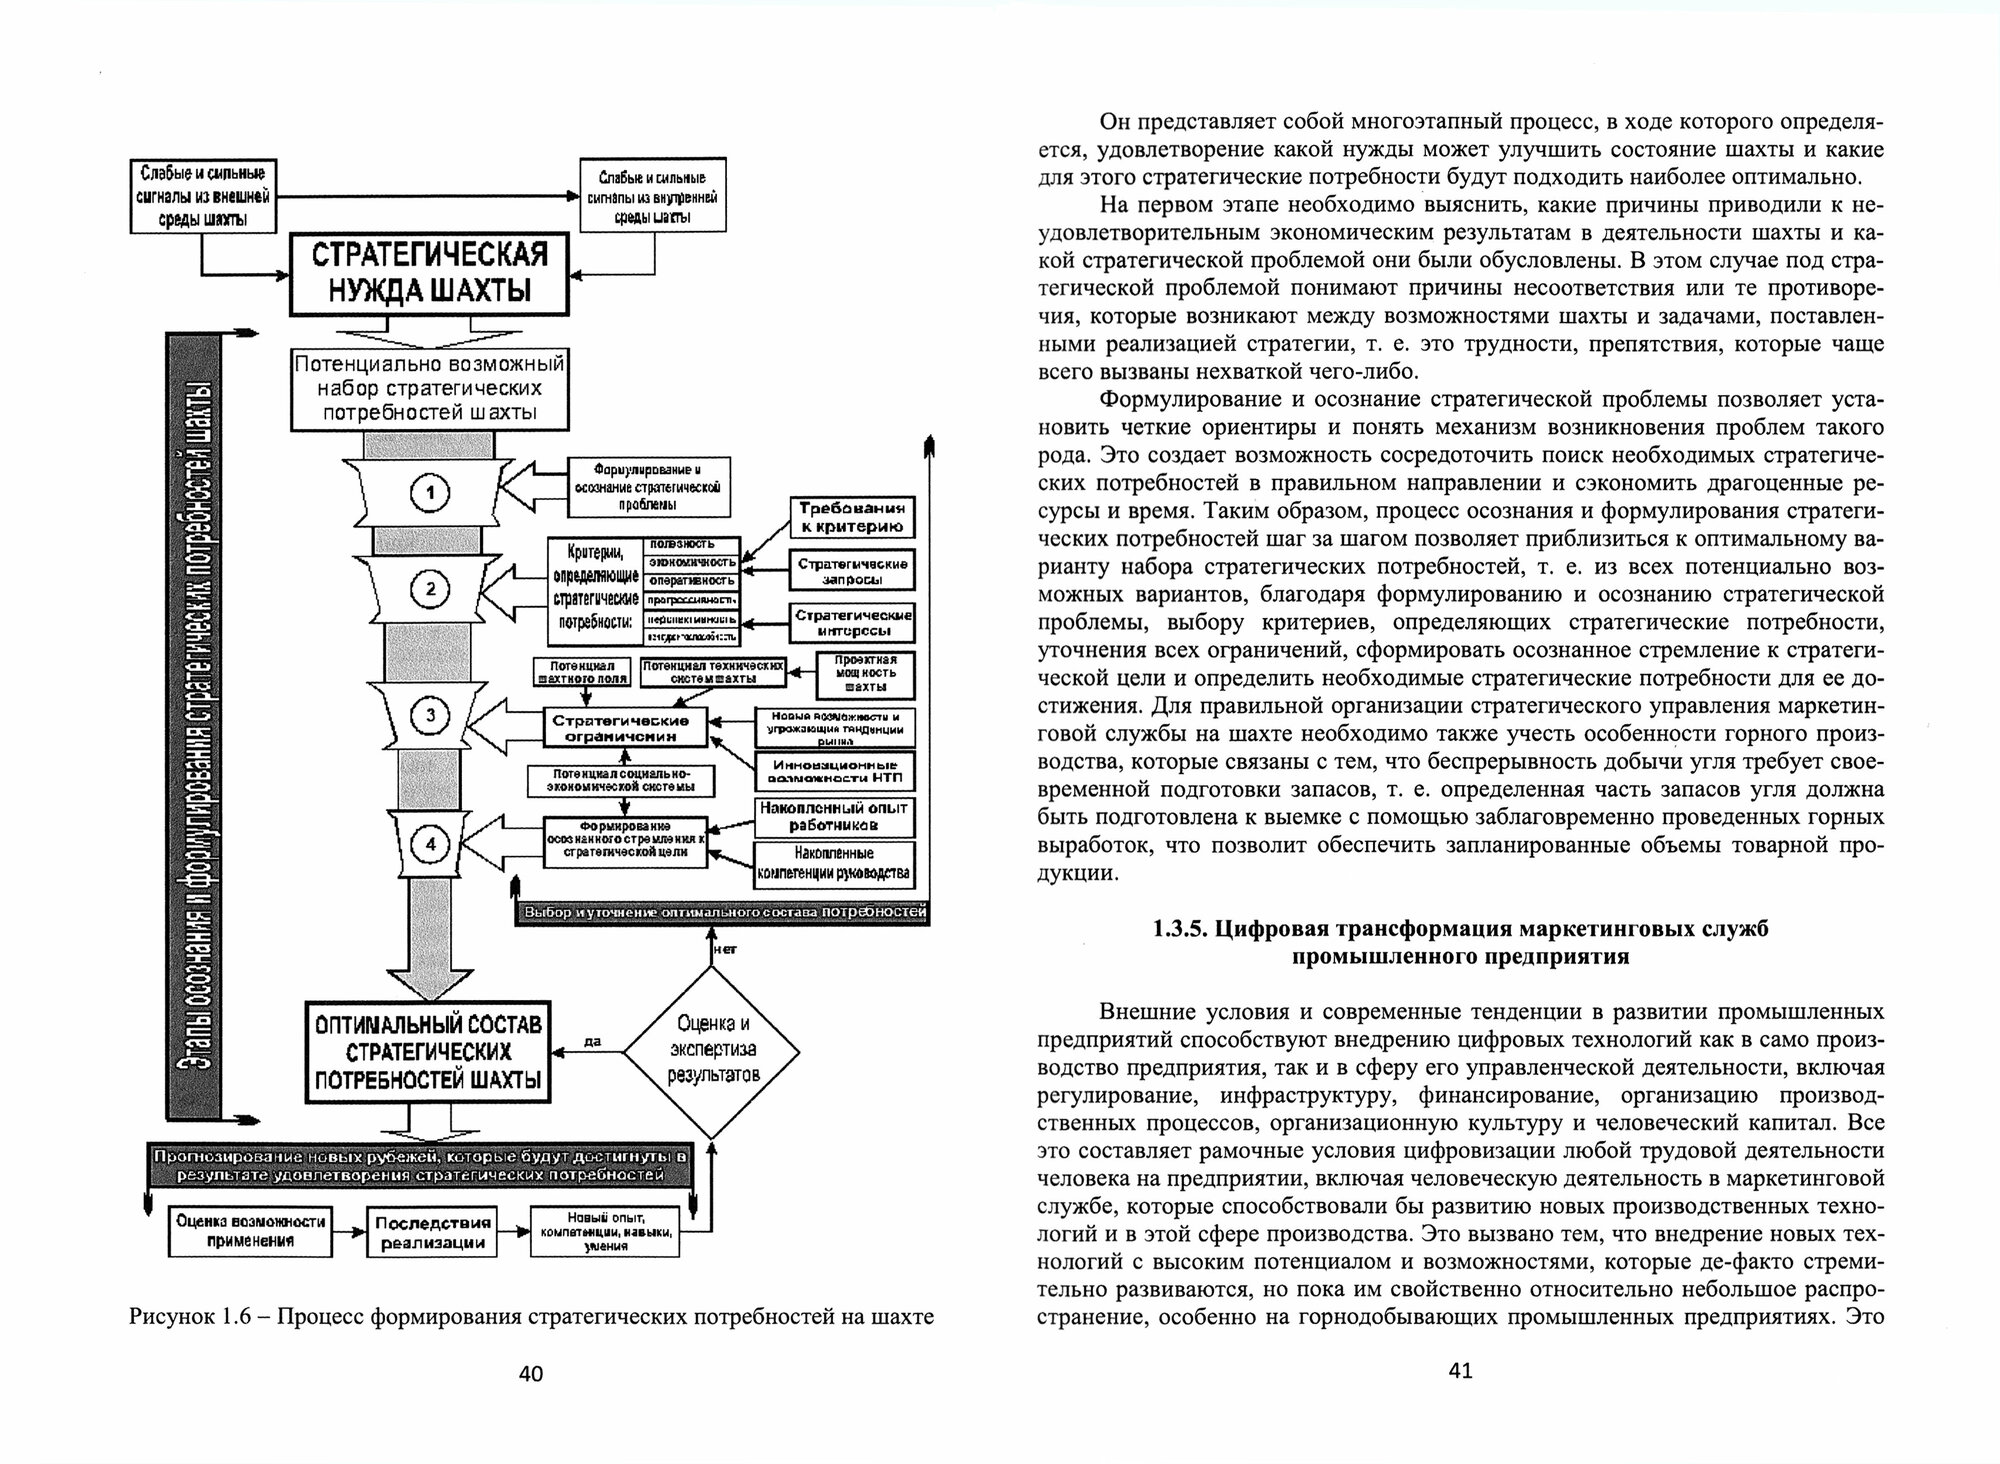 Теоретико-методологические основы организации и управления маркетингом промышленного предприятия - фото №3